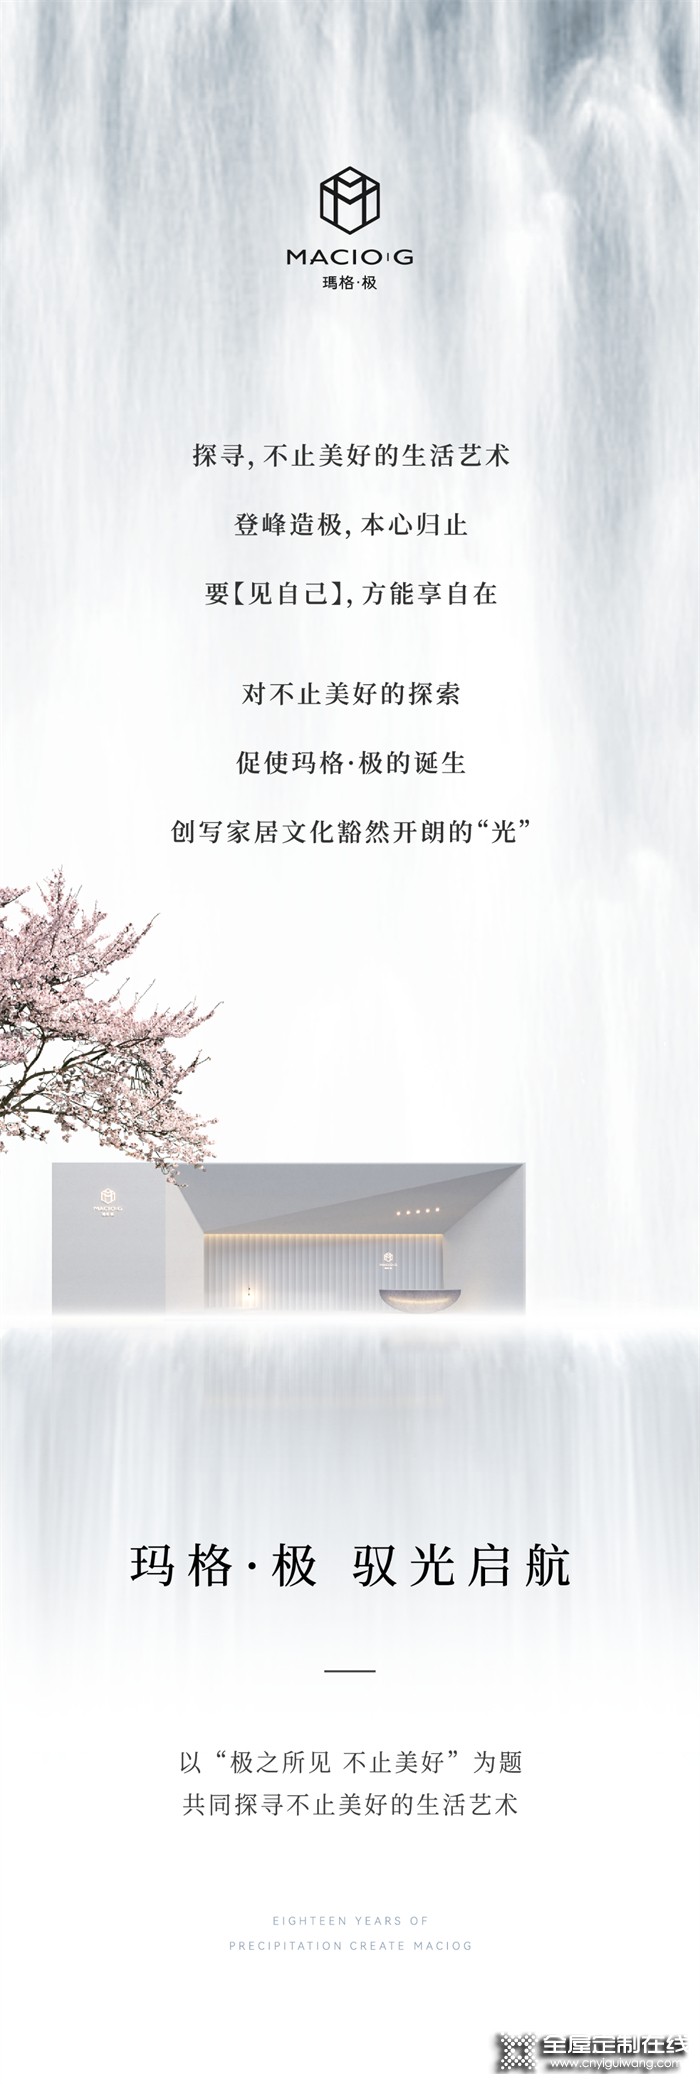 极之所见 不止美好丨玛格·极 广州建博会启幕